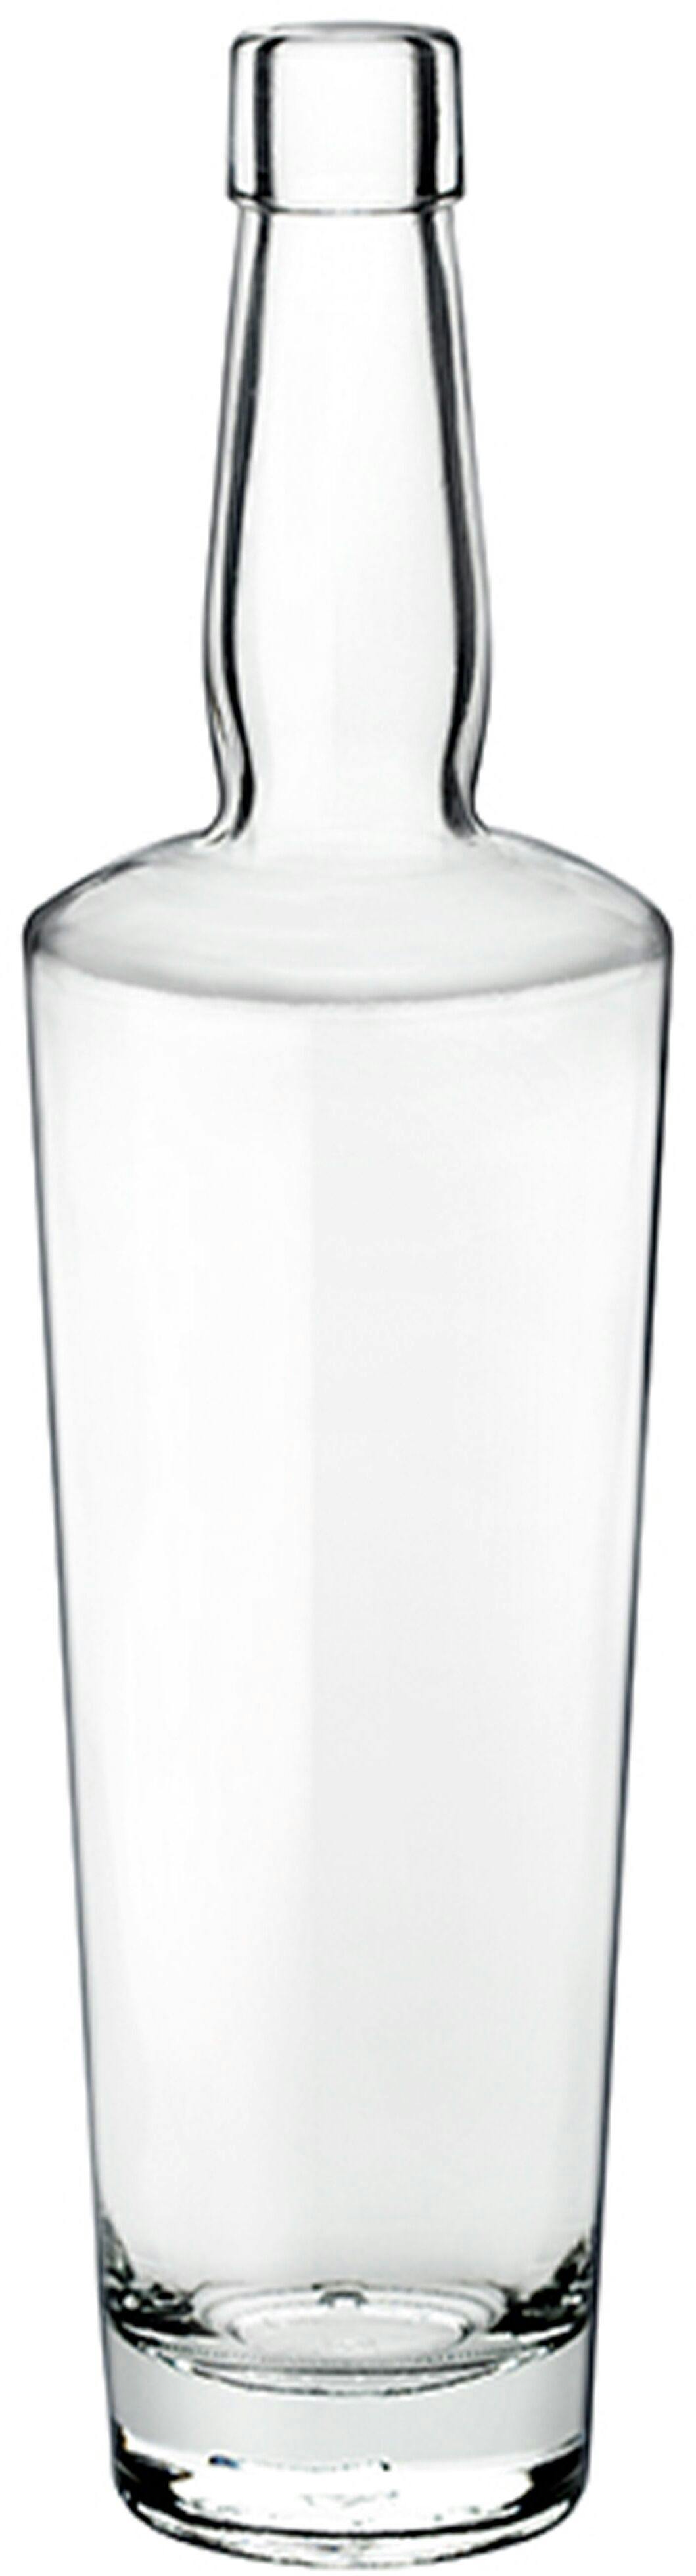 Flasche DOUG  700 ml BG-Korken